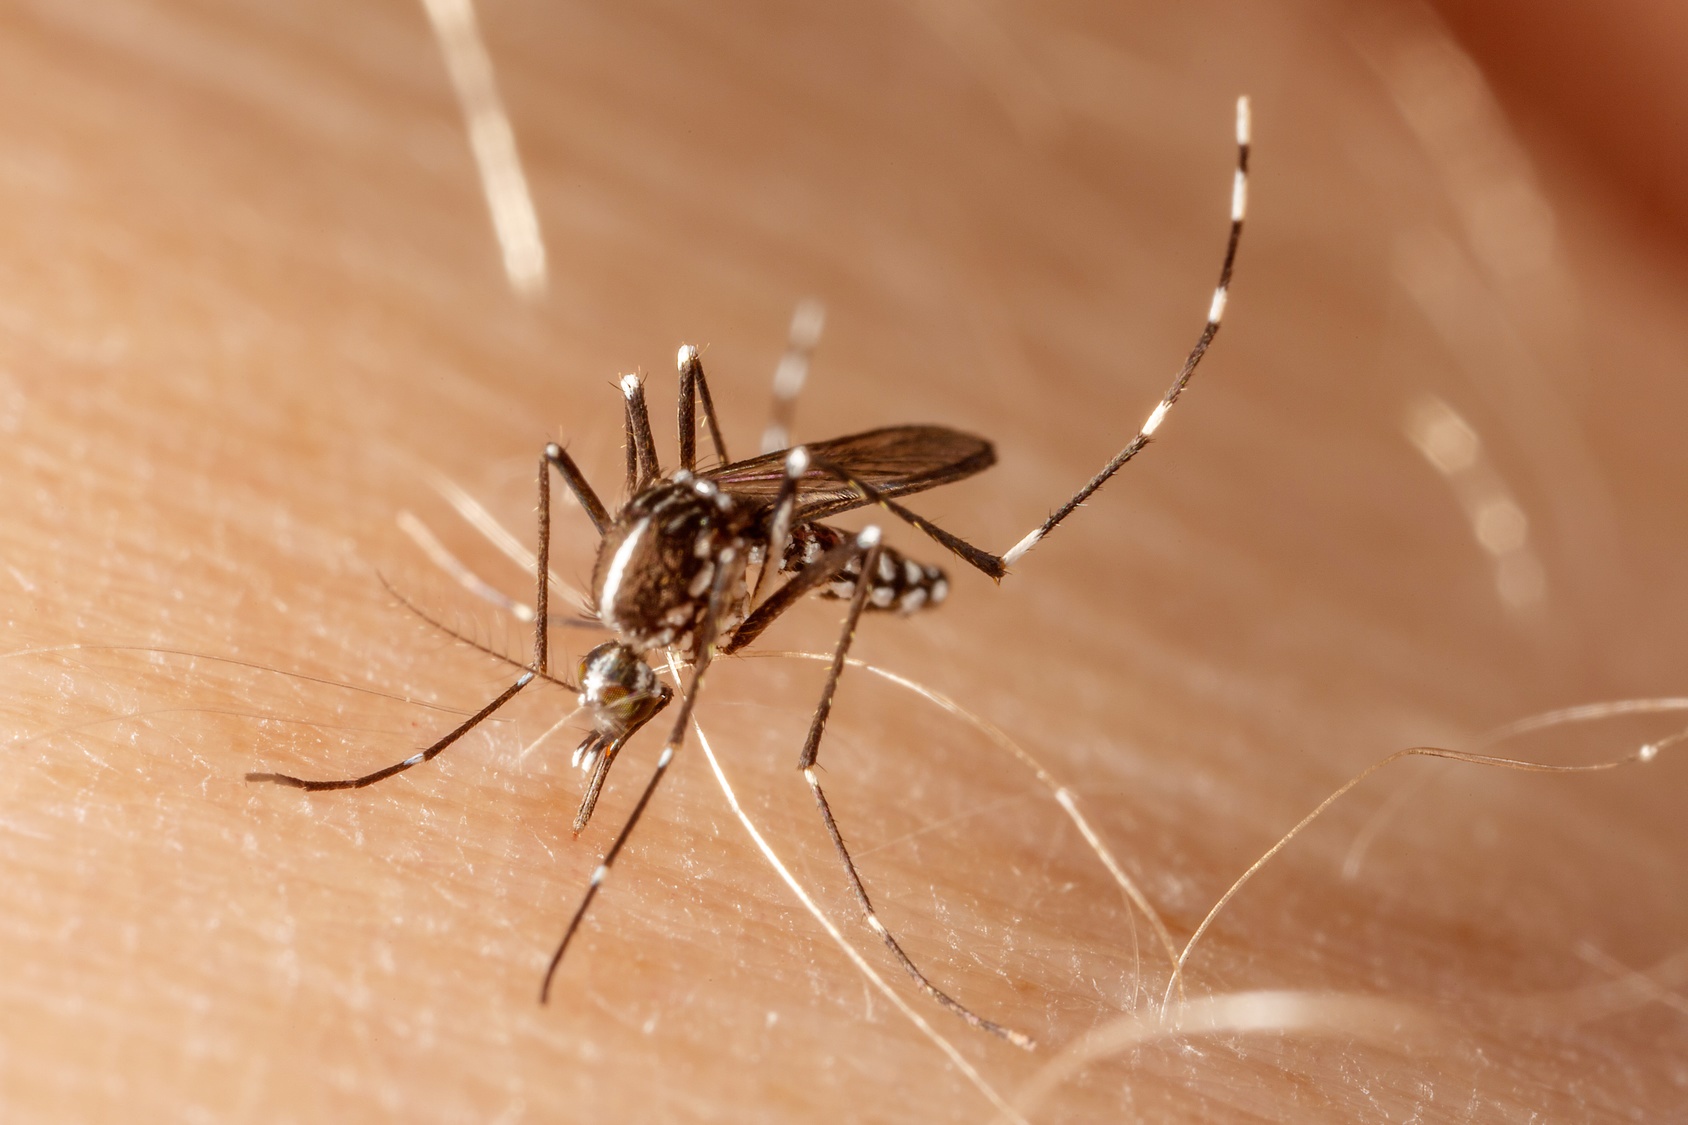 Les moustiques Aedes Aegypti&nbsp;sont particulièrement attirés par les acides carboxyliques, caractéristiques de l'odeur corporelle d'une personne.&nbsp;©&nbsp;tacio philip, Fotolia